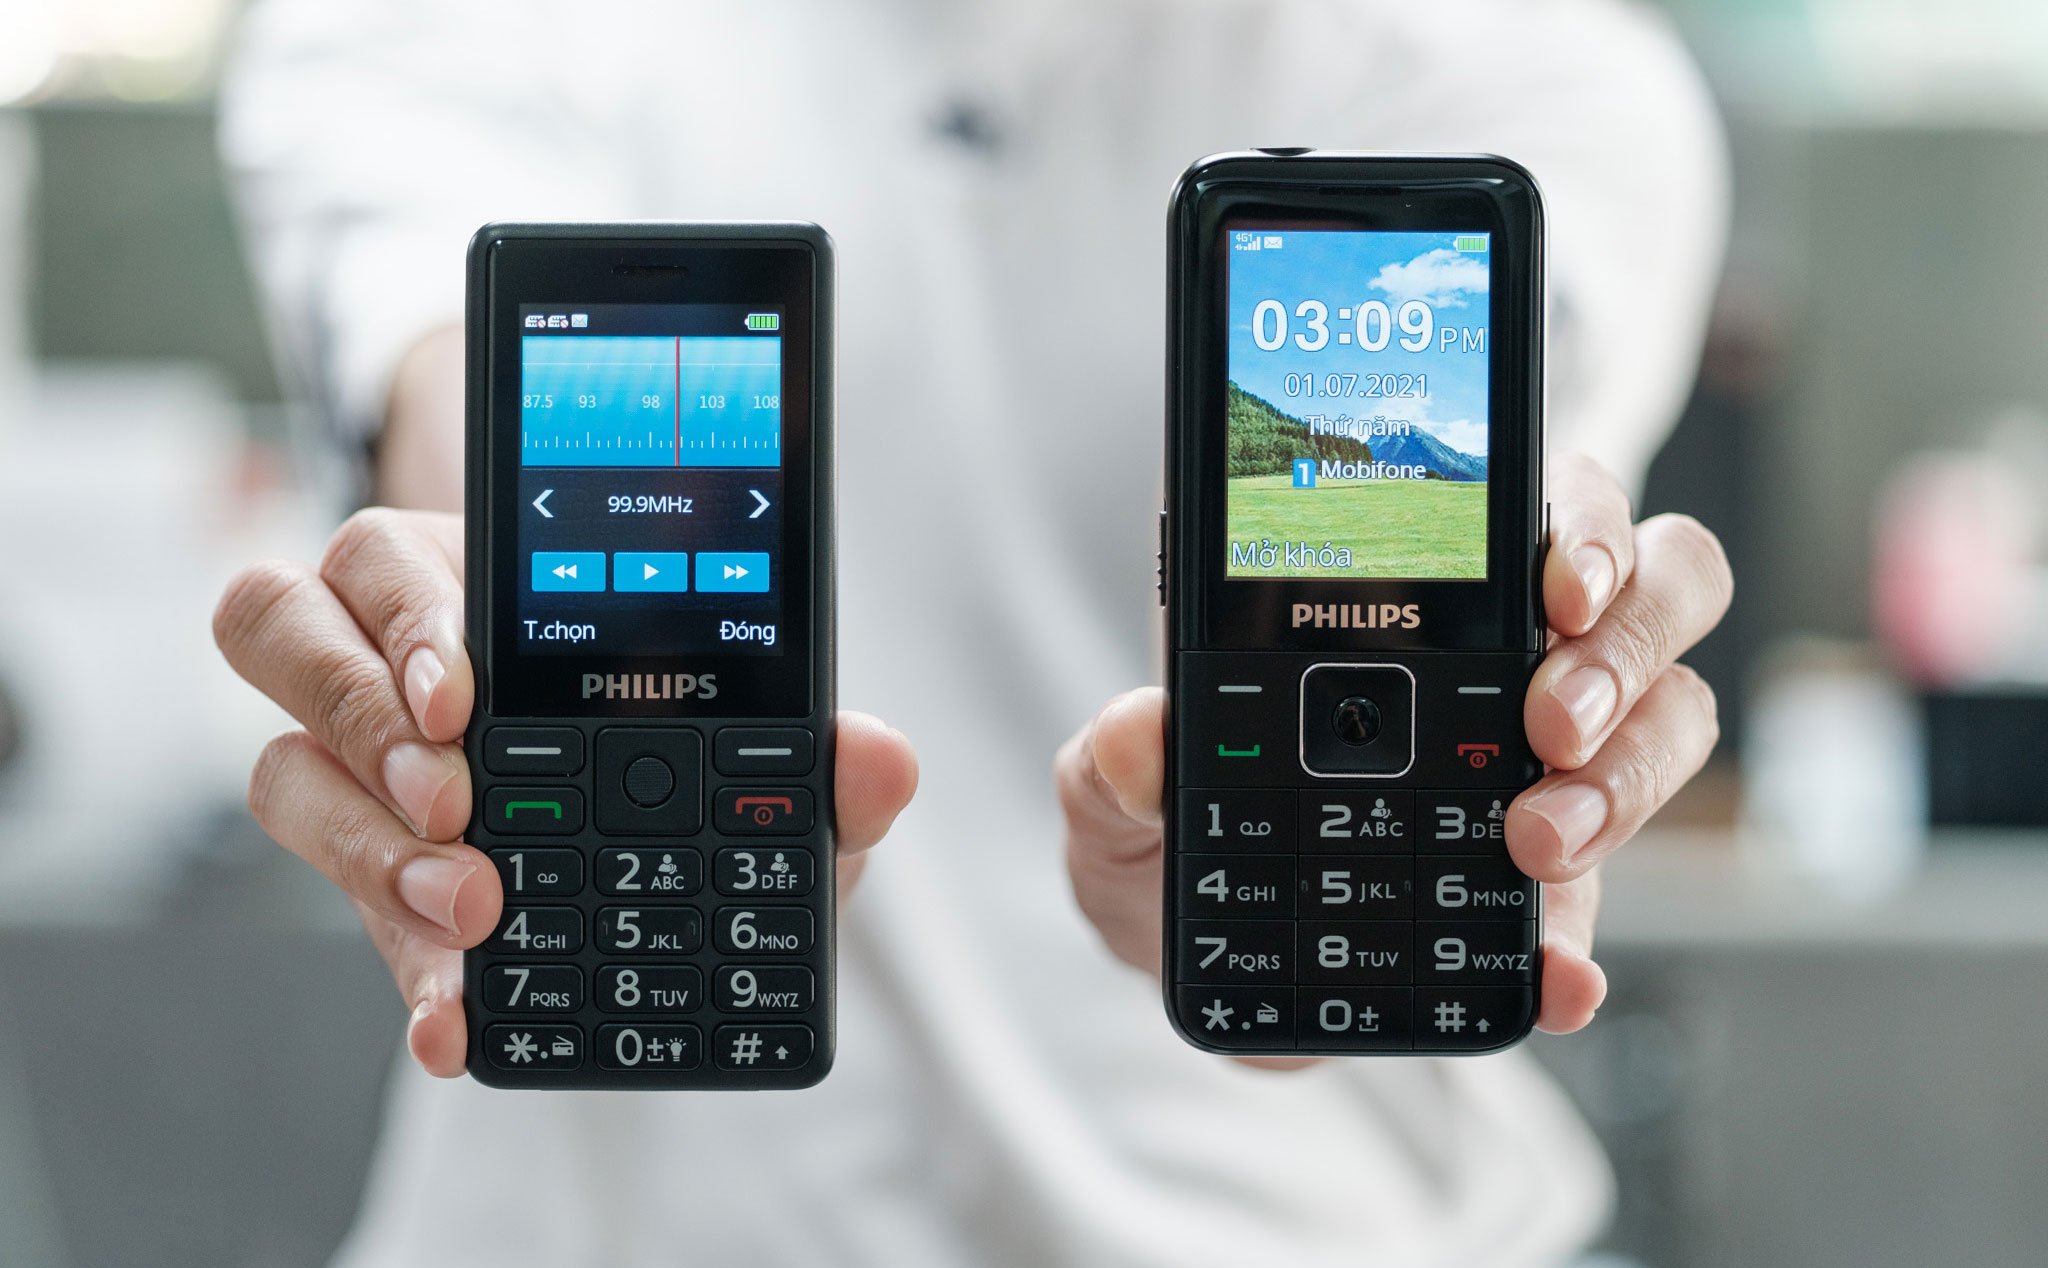 Trên tay Philips Xenium E506 & E527: điện thoại cơ bản nghe gọi qua 4G, giá từ 730.000 đồng